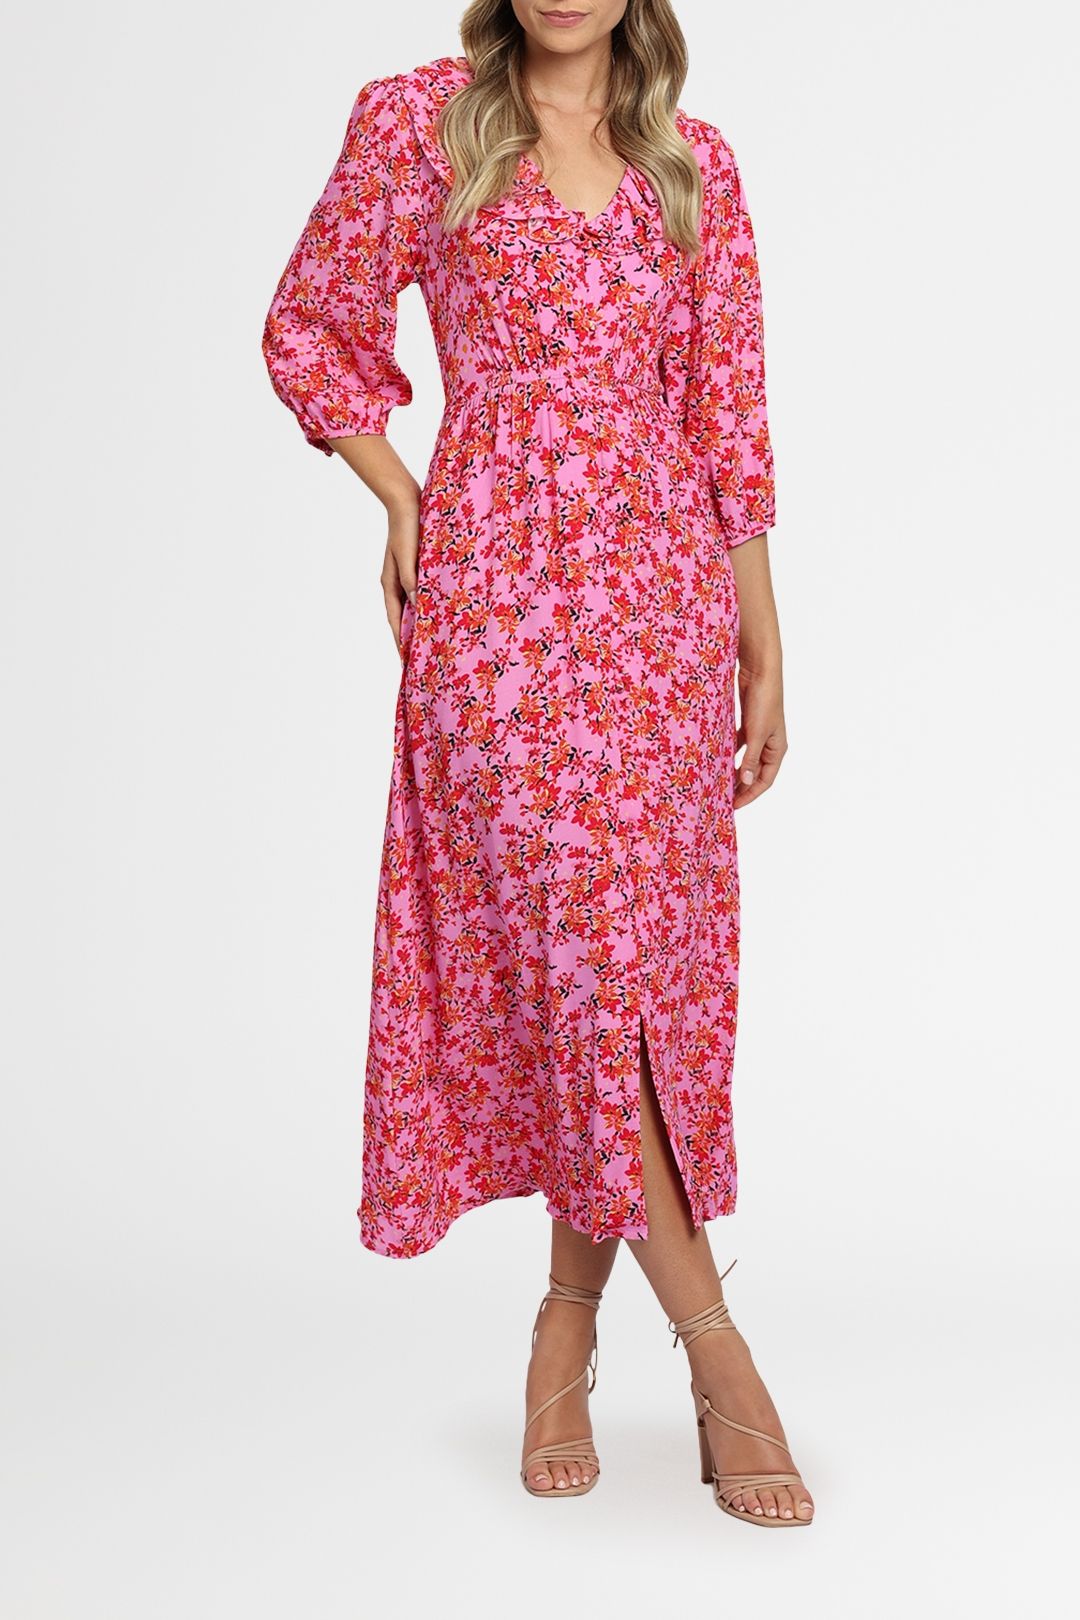 Kachel Poppy Dress Pink Ditzy